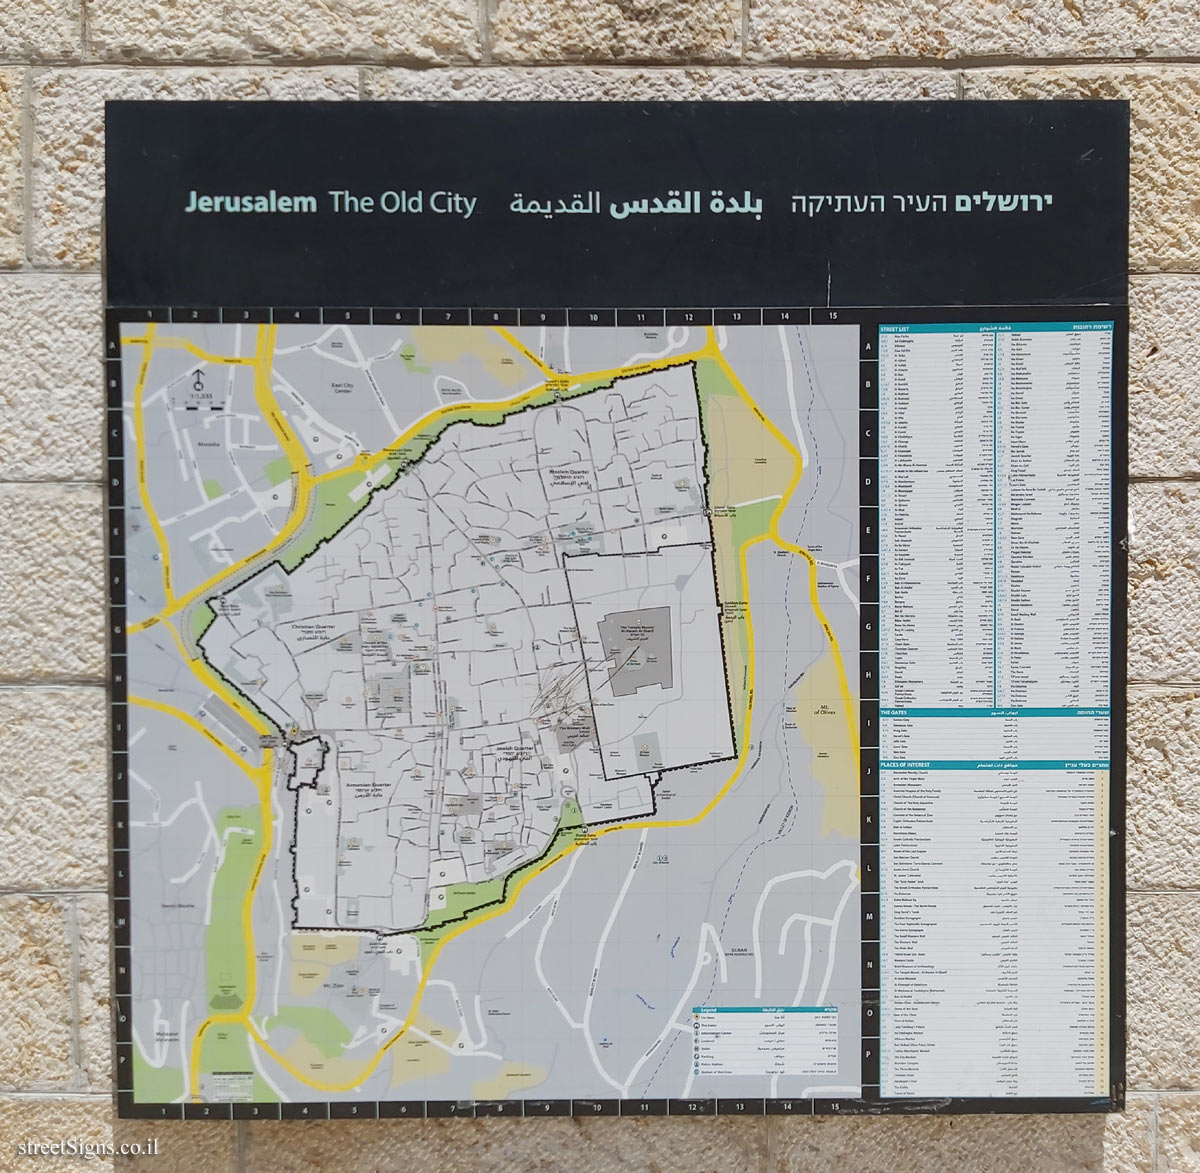 Jerusalem - Map of the Old City